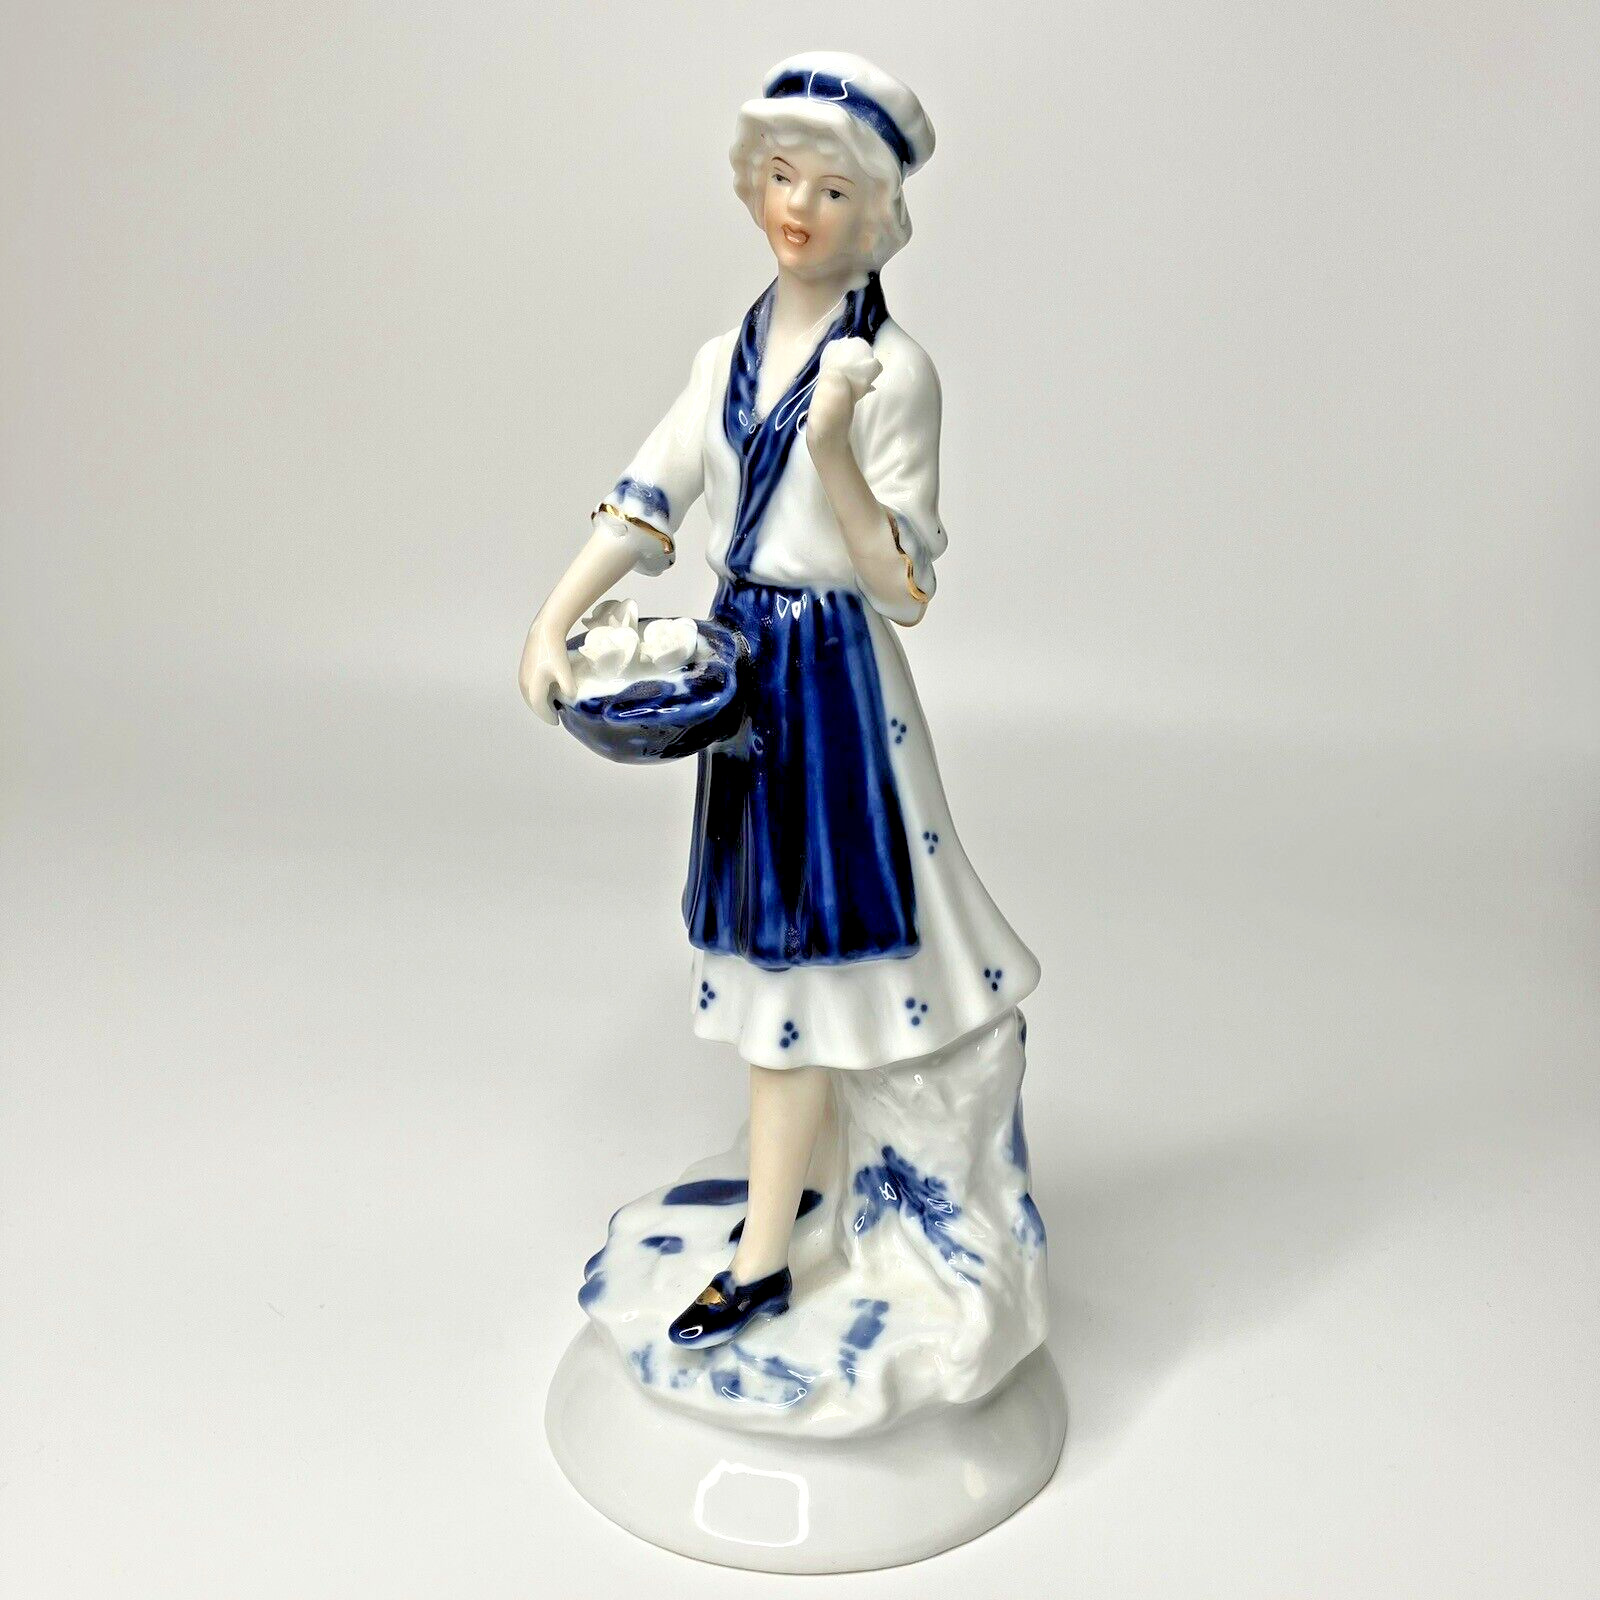 Vintage Girl Woman Figurine Ceramic Porcelain Rose Basket Blue White 8.5 in